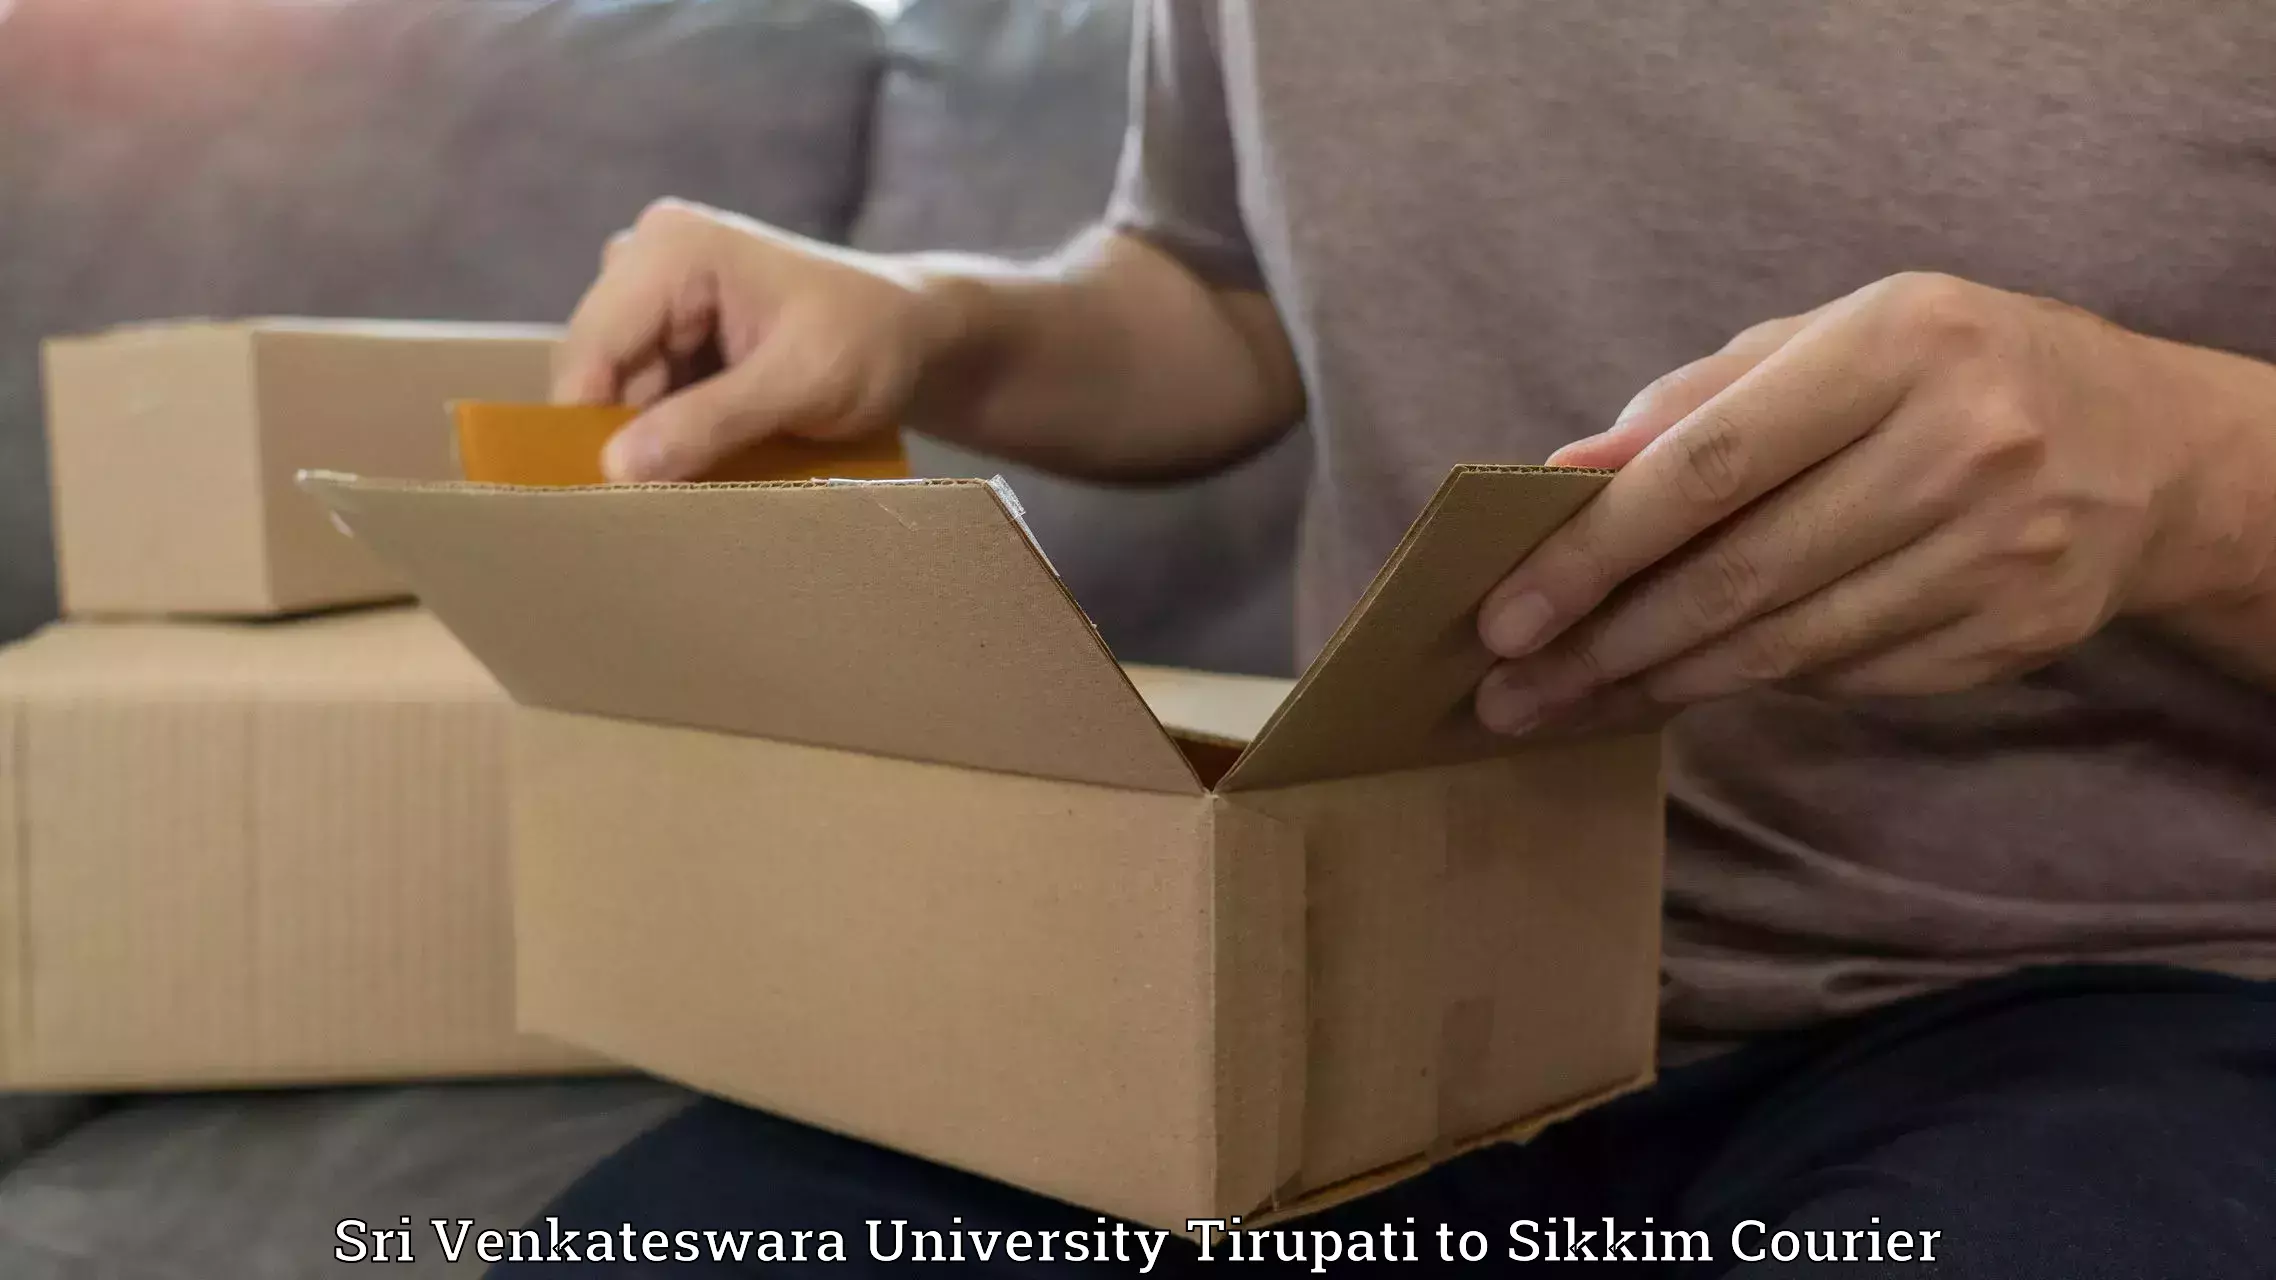 High-speed delivery in Sri Venkateswara University Tirupati to Gangtok